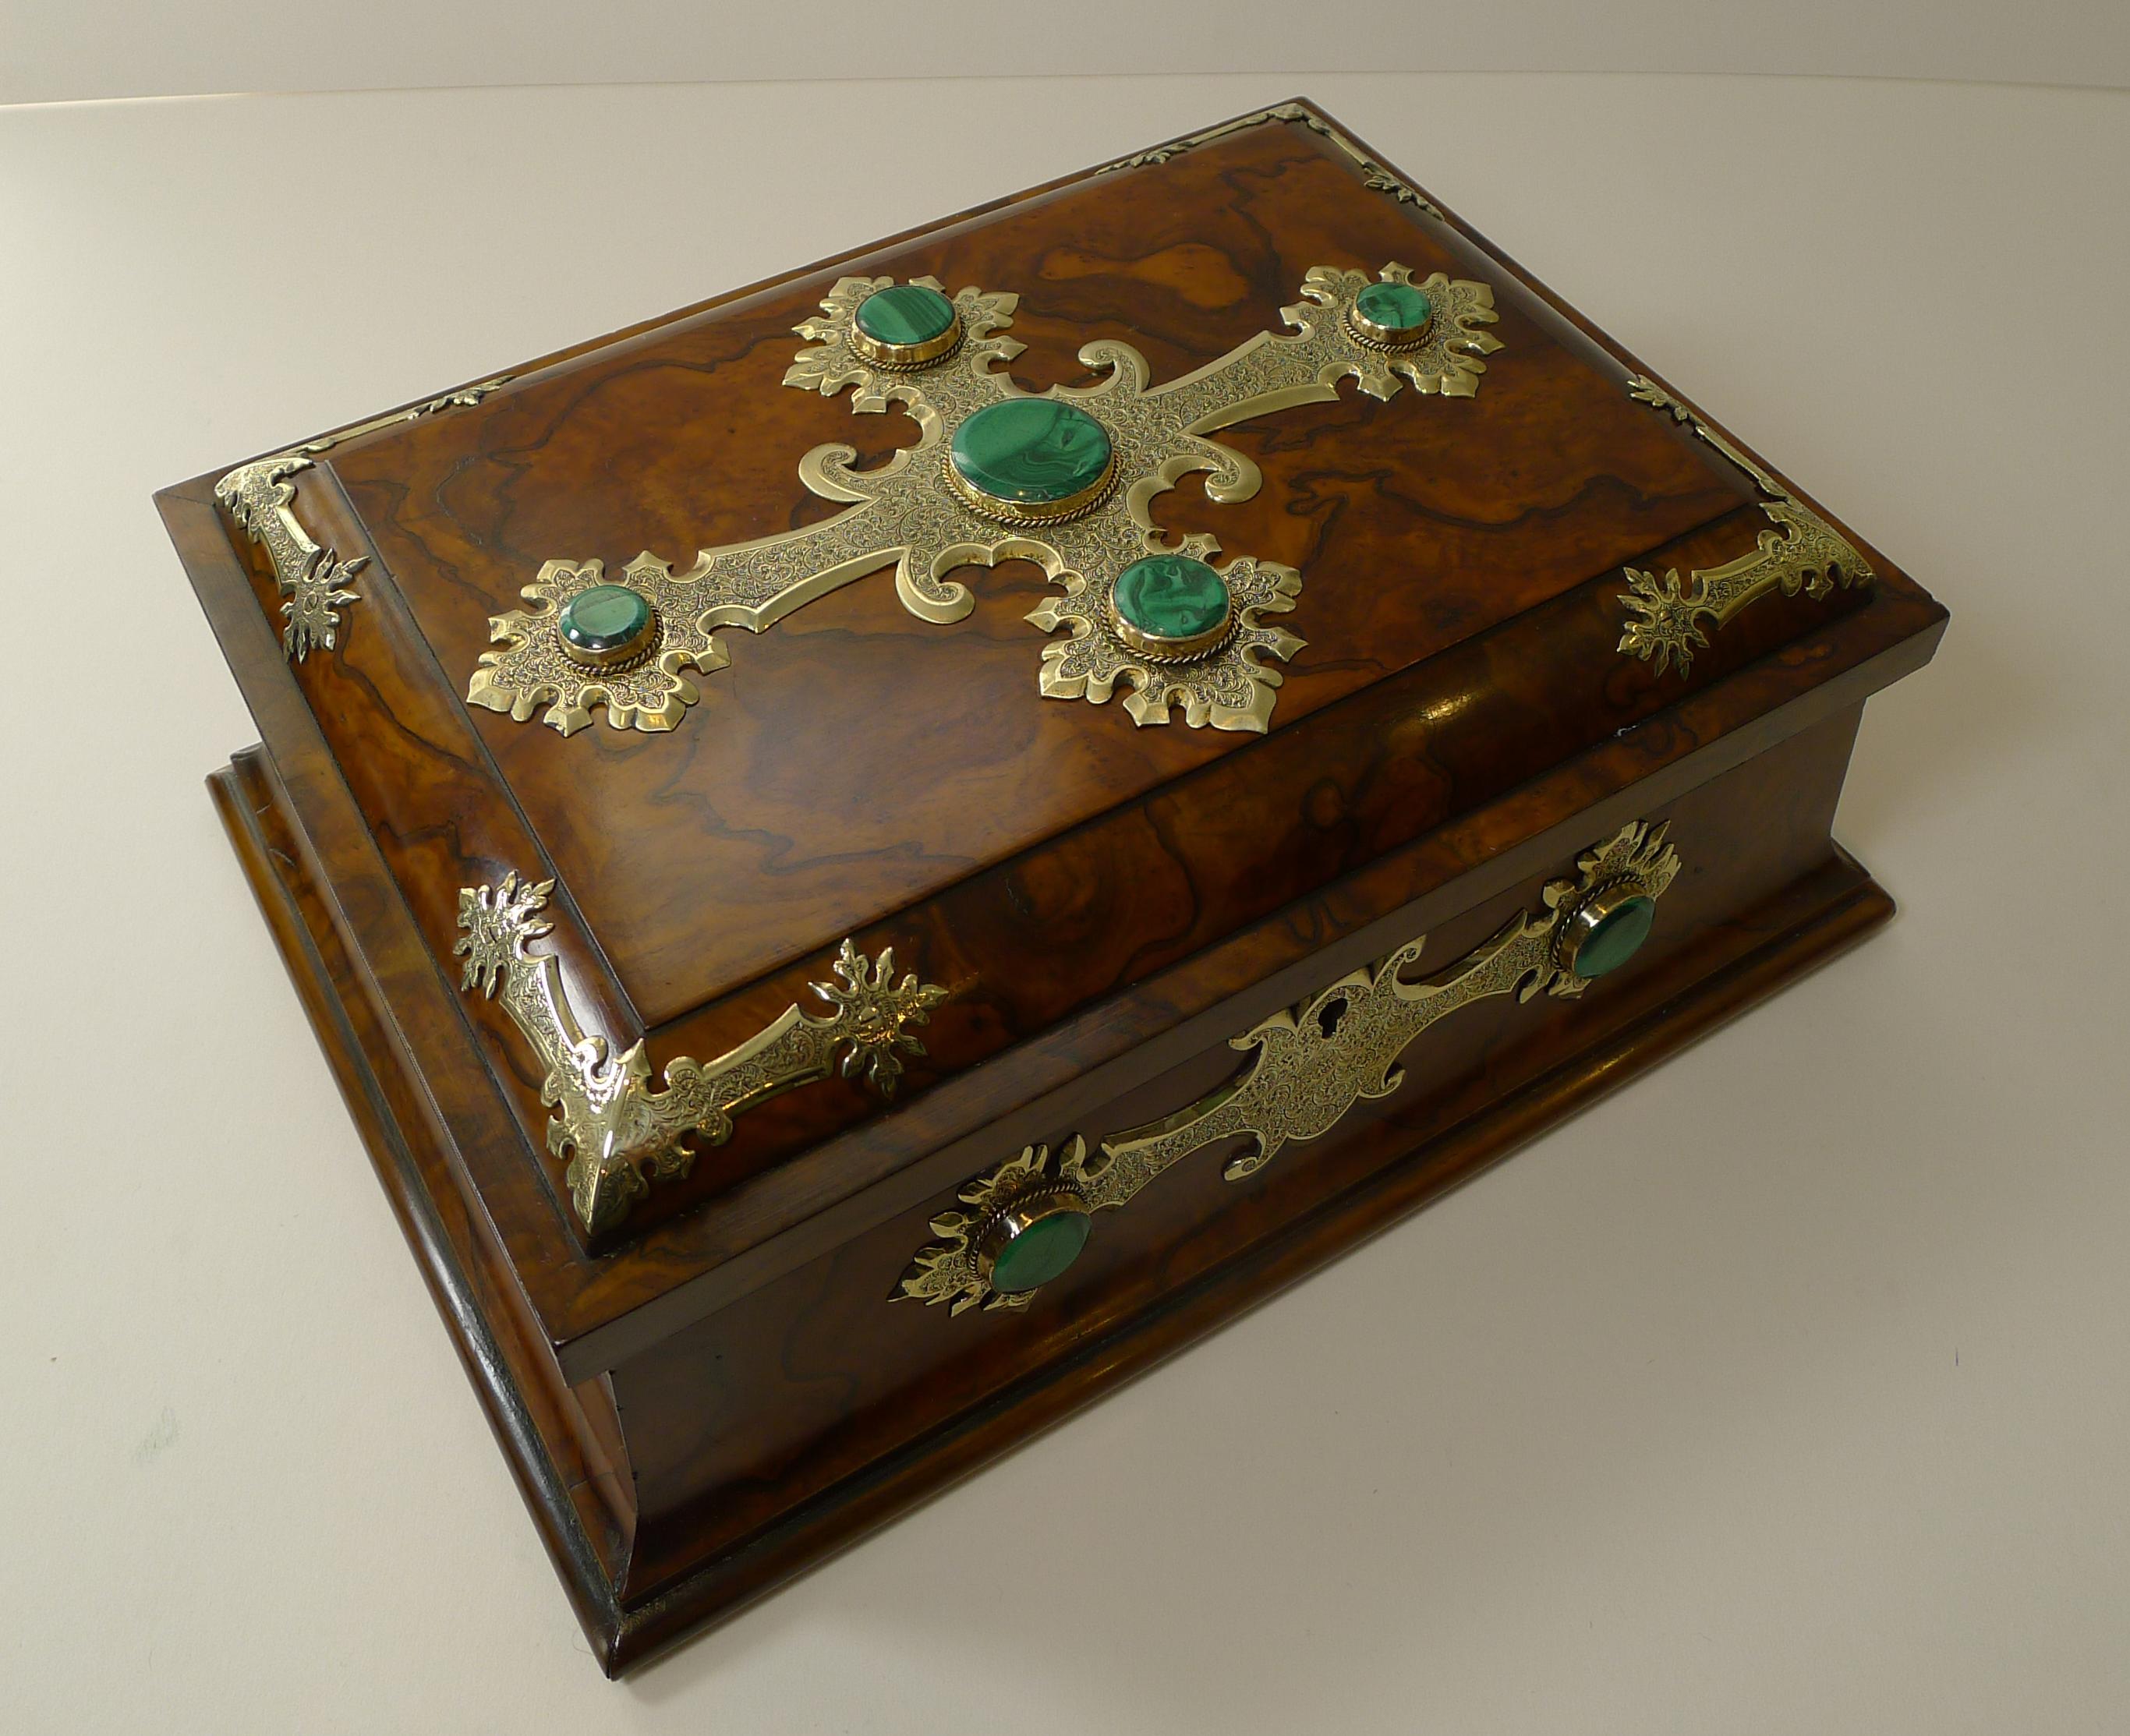 Eine atemberaubende englische viktorianische Spiele / Spielkarten-Box aus Burl Walnuss mit beeindruckenden poliertem Messing montiert wunderschön detailliert, und wiederum mit polierten grünen Malachit Steinen eingelegt.

Die Schachtel wird mit